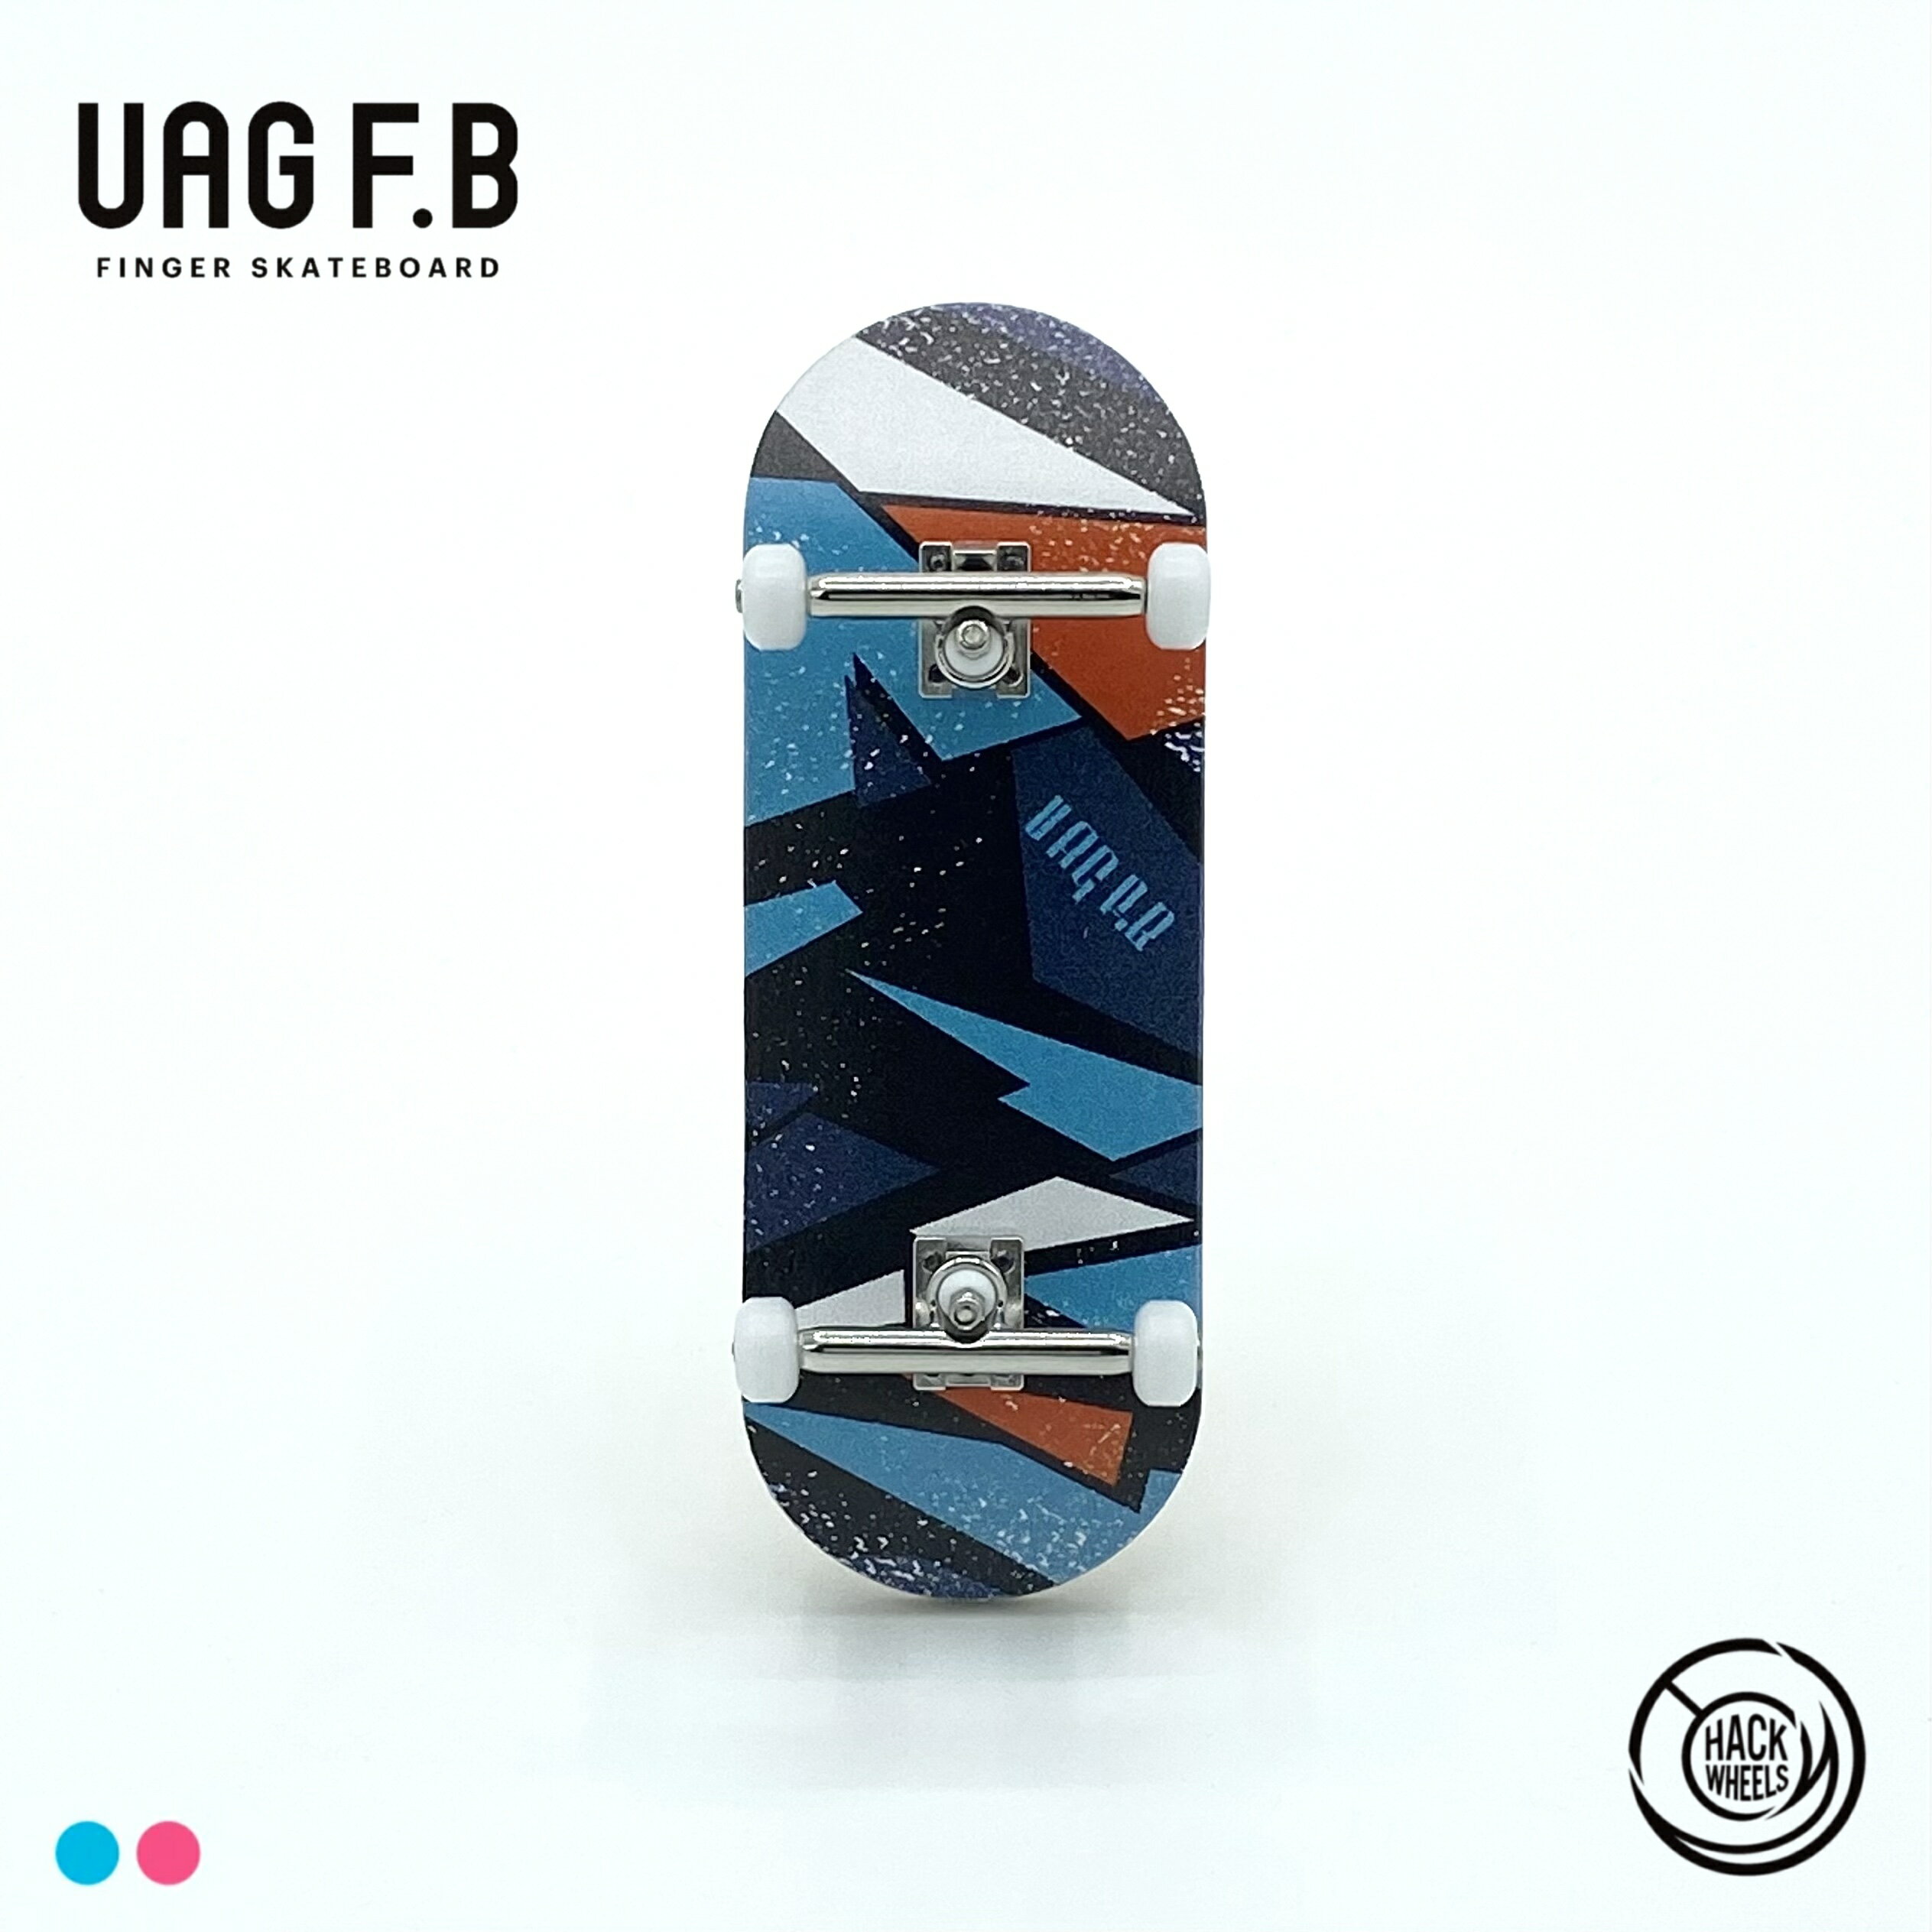 UAG F.B プロコンプリート / Choppy / finger skate board / 指スケ / 指スケボー